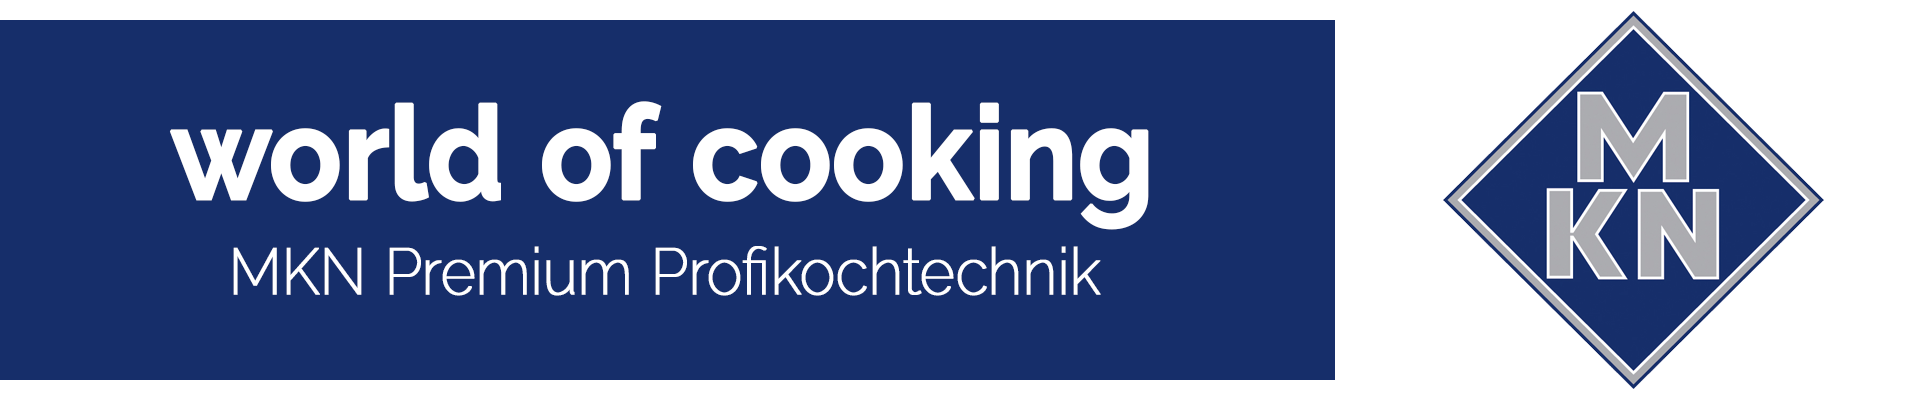 MKN Banner world of cooking
MKN Premium Profikochtechnik